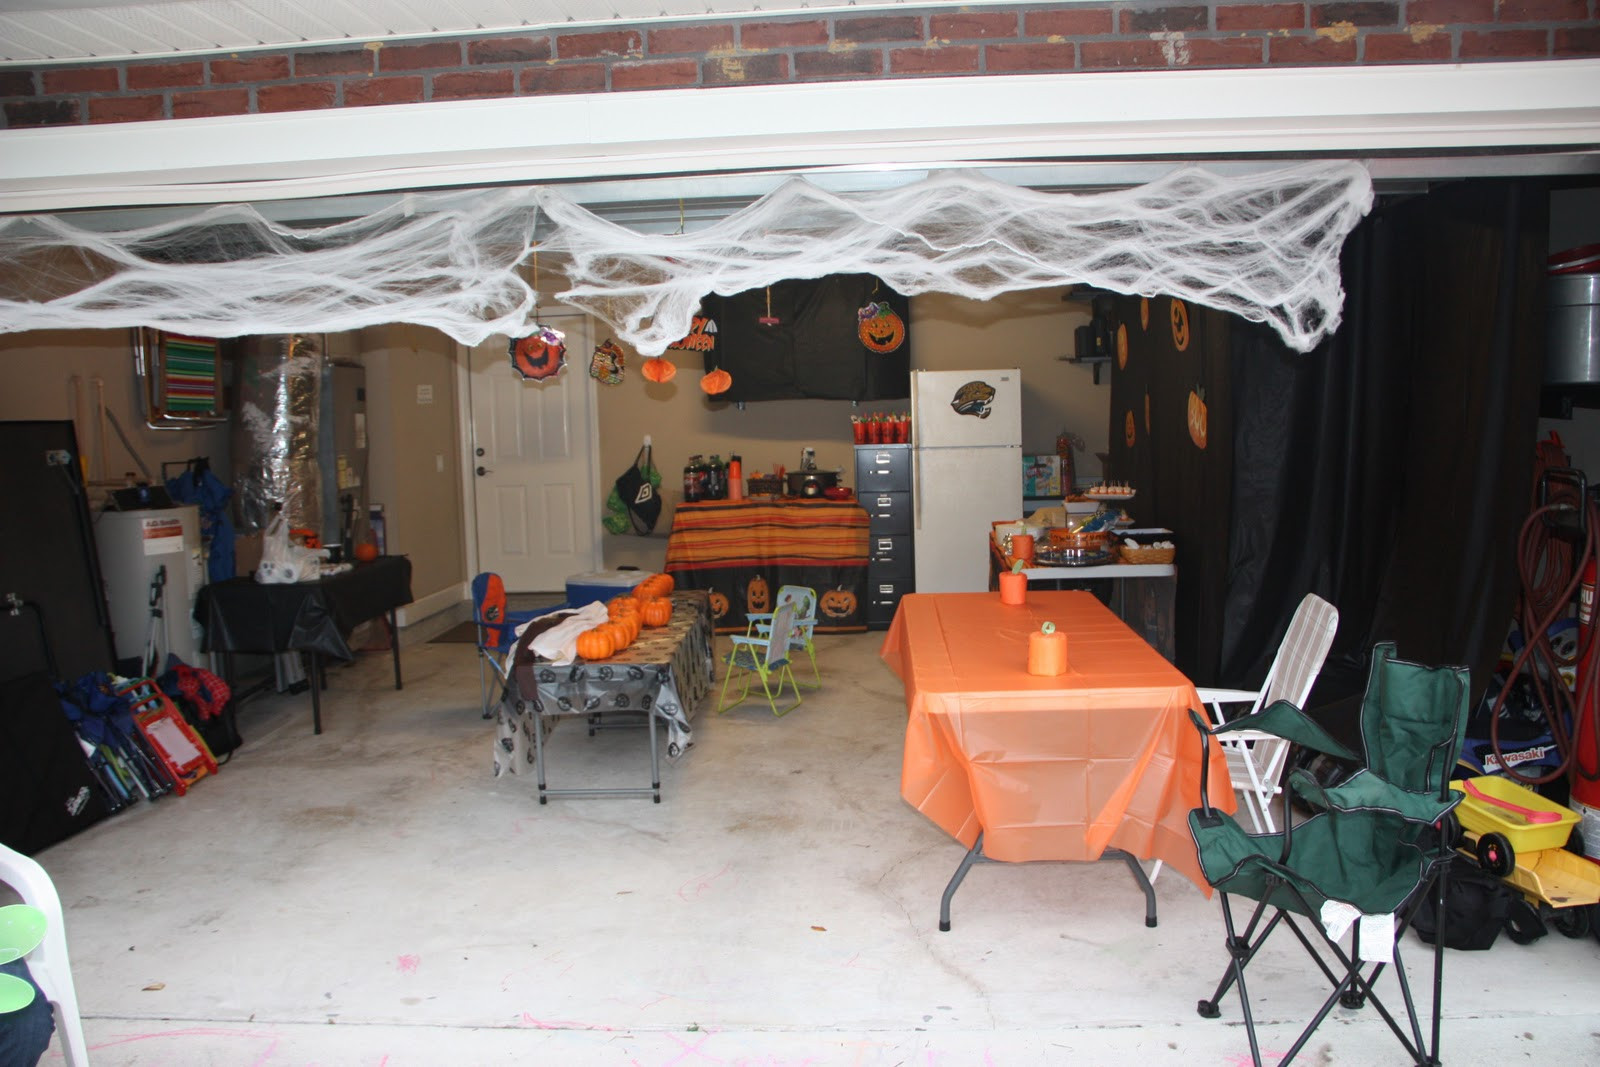 Halloween Garage Ideas
 Garage Party Ideas Home Design Inside